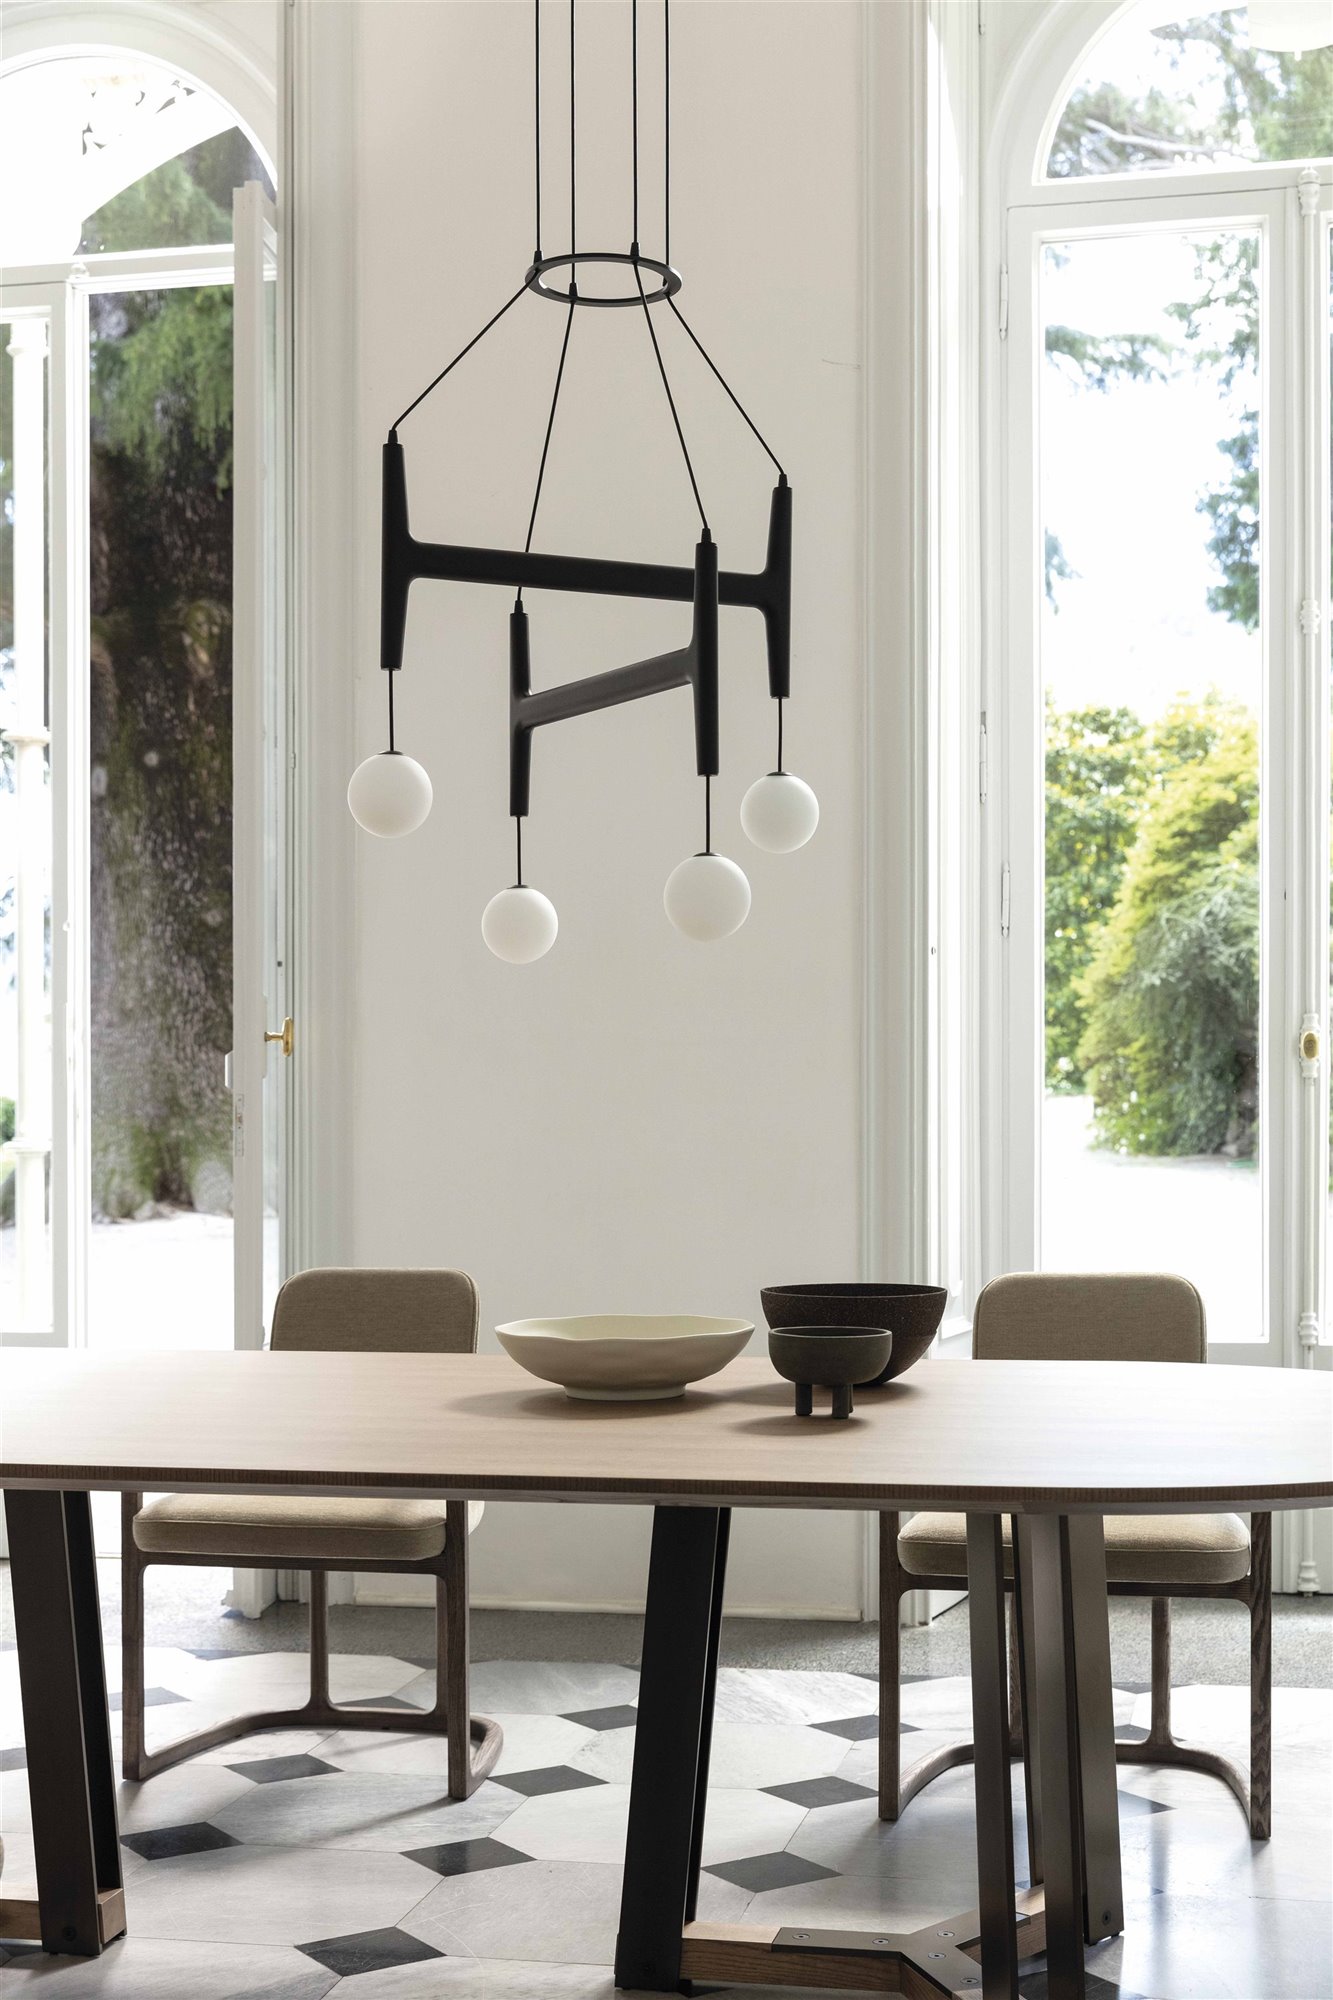 lámpara de techo negra brazos y esferas blancas, mesa de comedor con cuencos